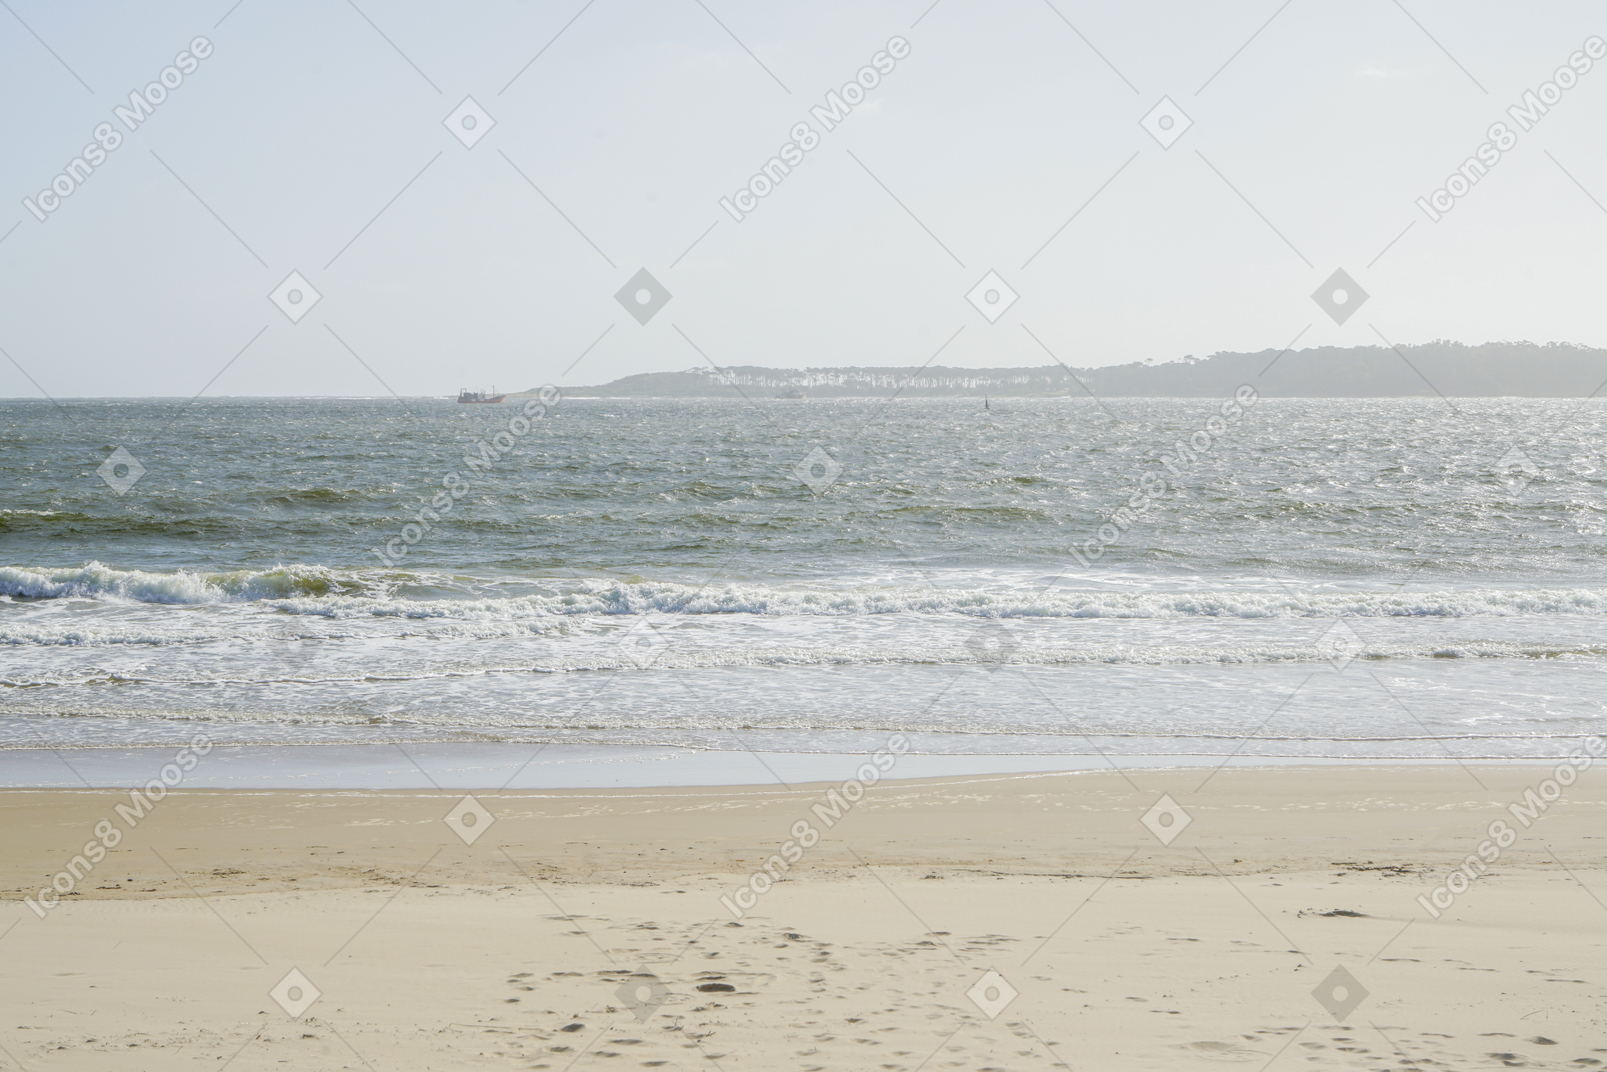 Playa de arena, mar y colinas en la distancia